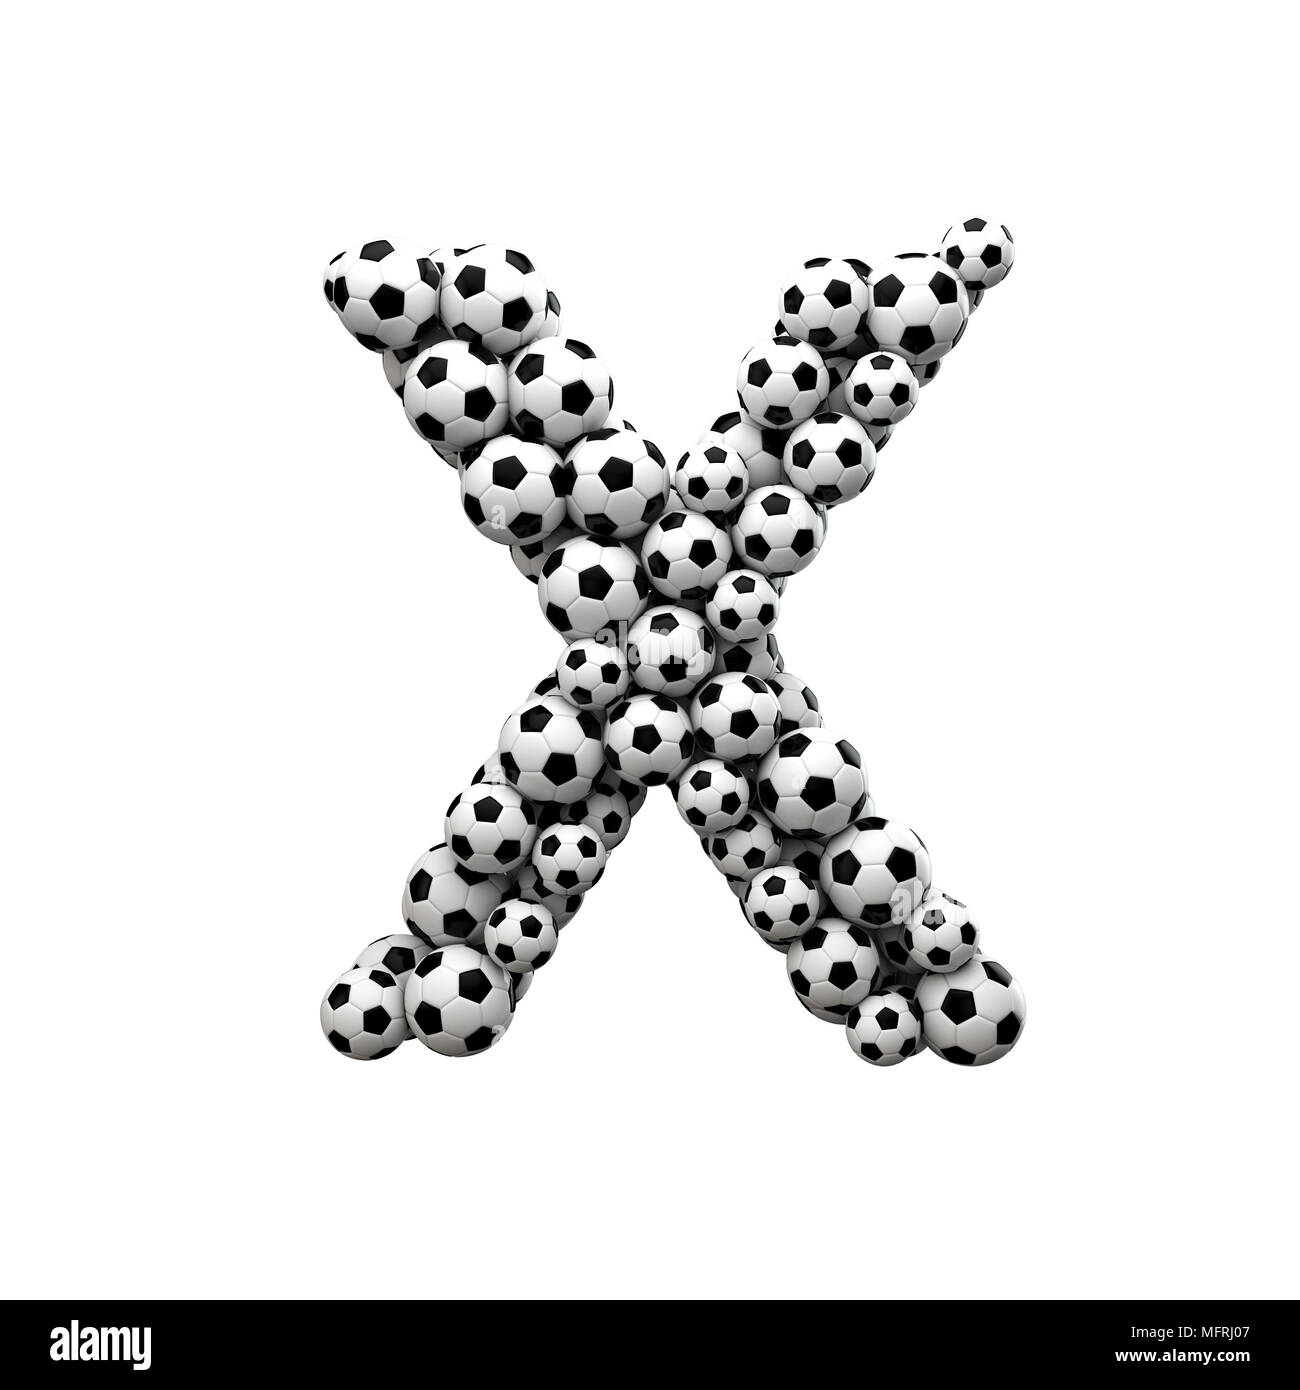 Letra mayúscula X Font hechas a partir de una colección de balones de fútbol. 3D Rendering Foto de stock